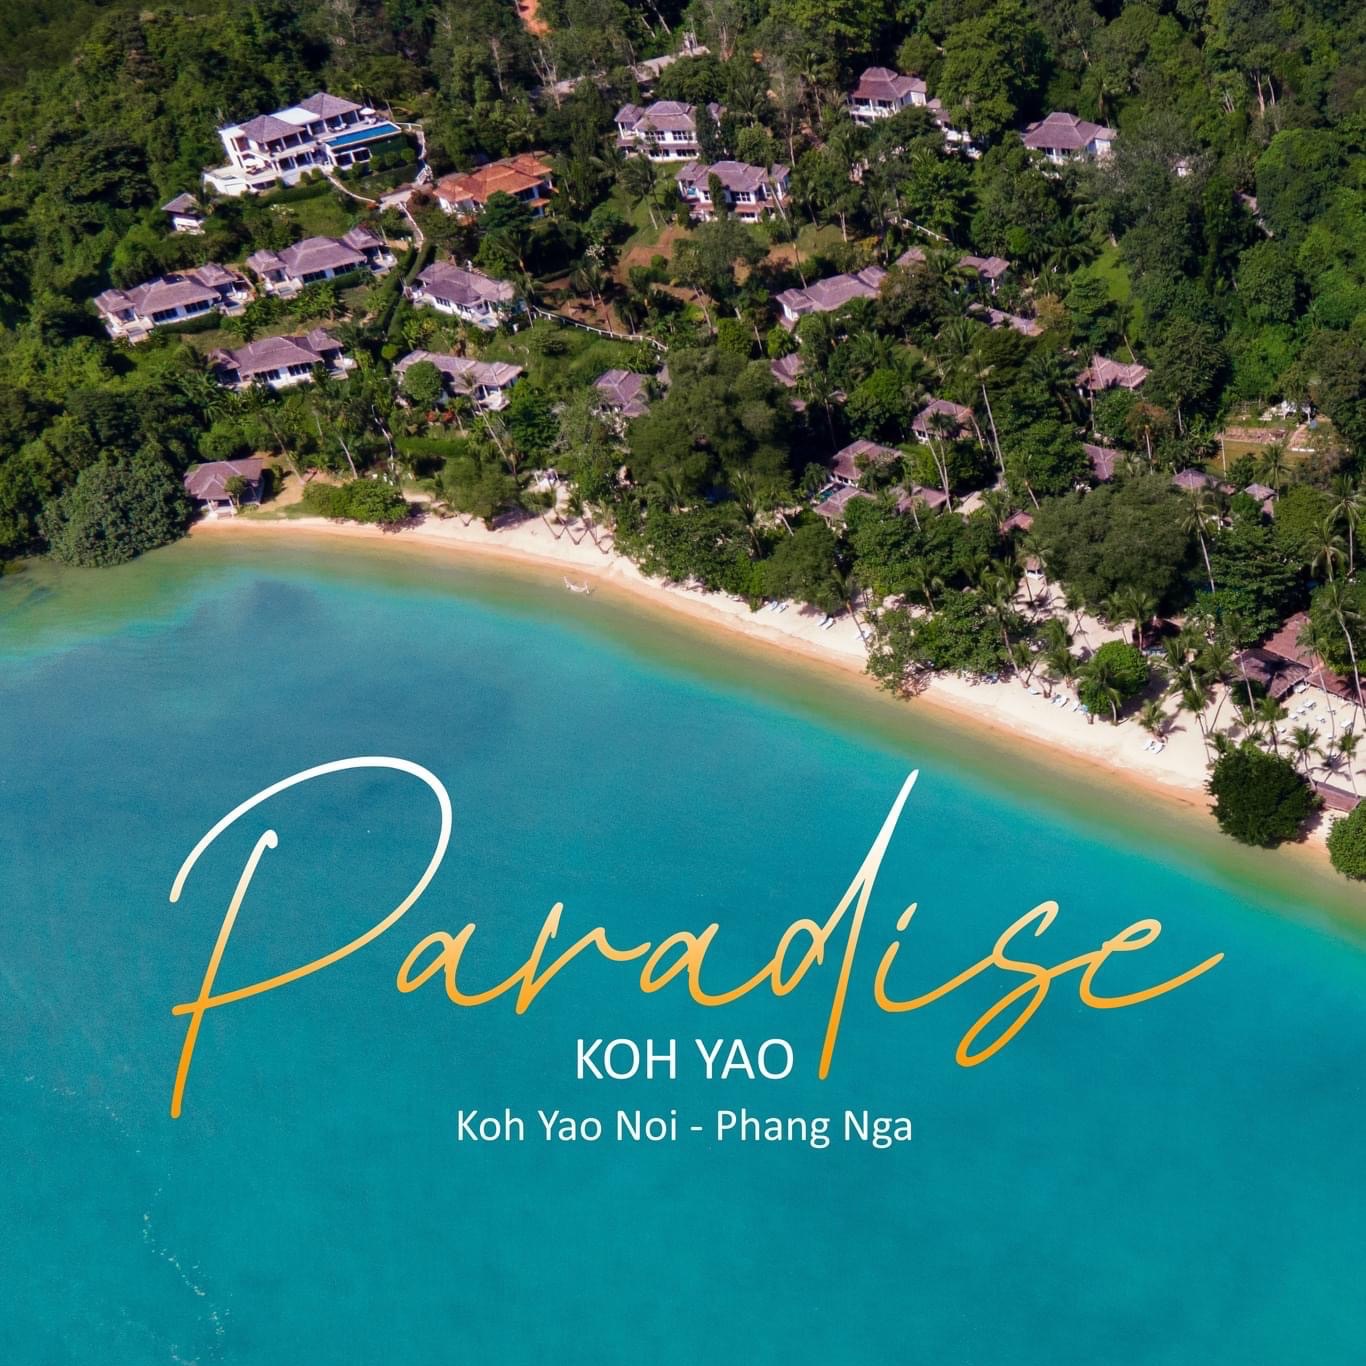 ทริปติดเกาะ Paradise Koh Yao Resort เกาะยาวน้อย | Trip.com เกาะยาวน้อย